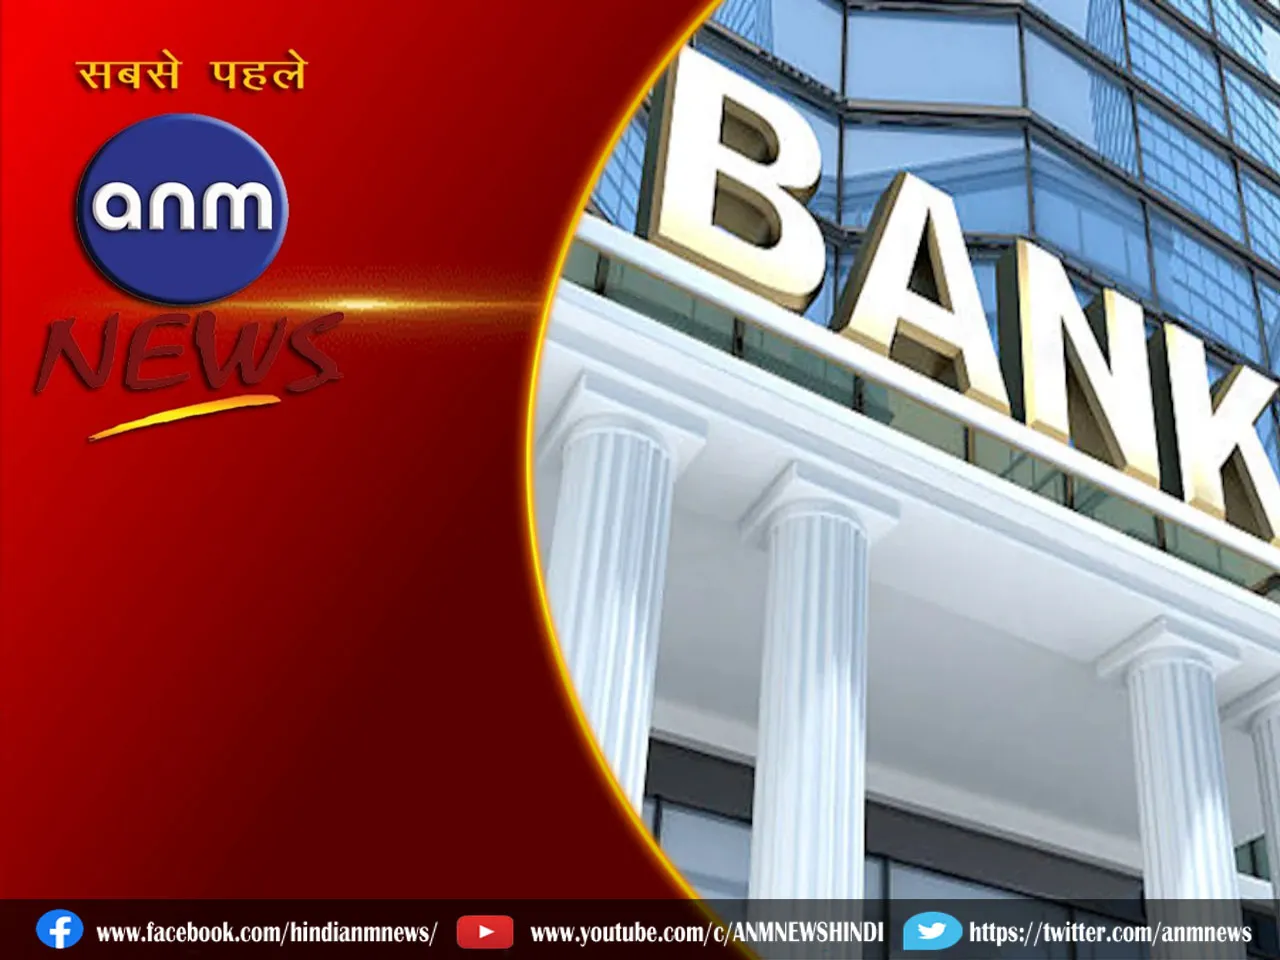 Banks Open On Sunday: बैंक के लाखों कर्मचारी ध्यान दें! संडे के दिन भी खुले रहेंगे बैंक?